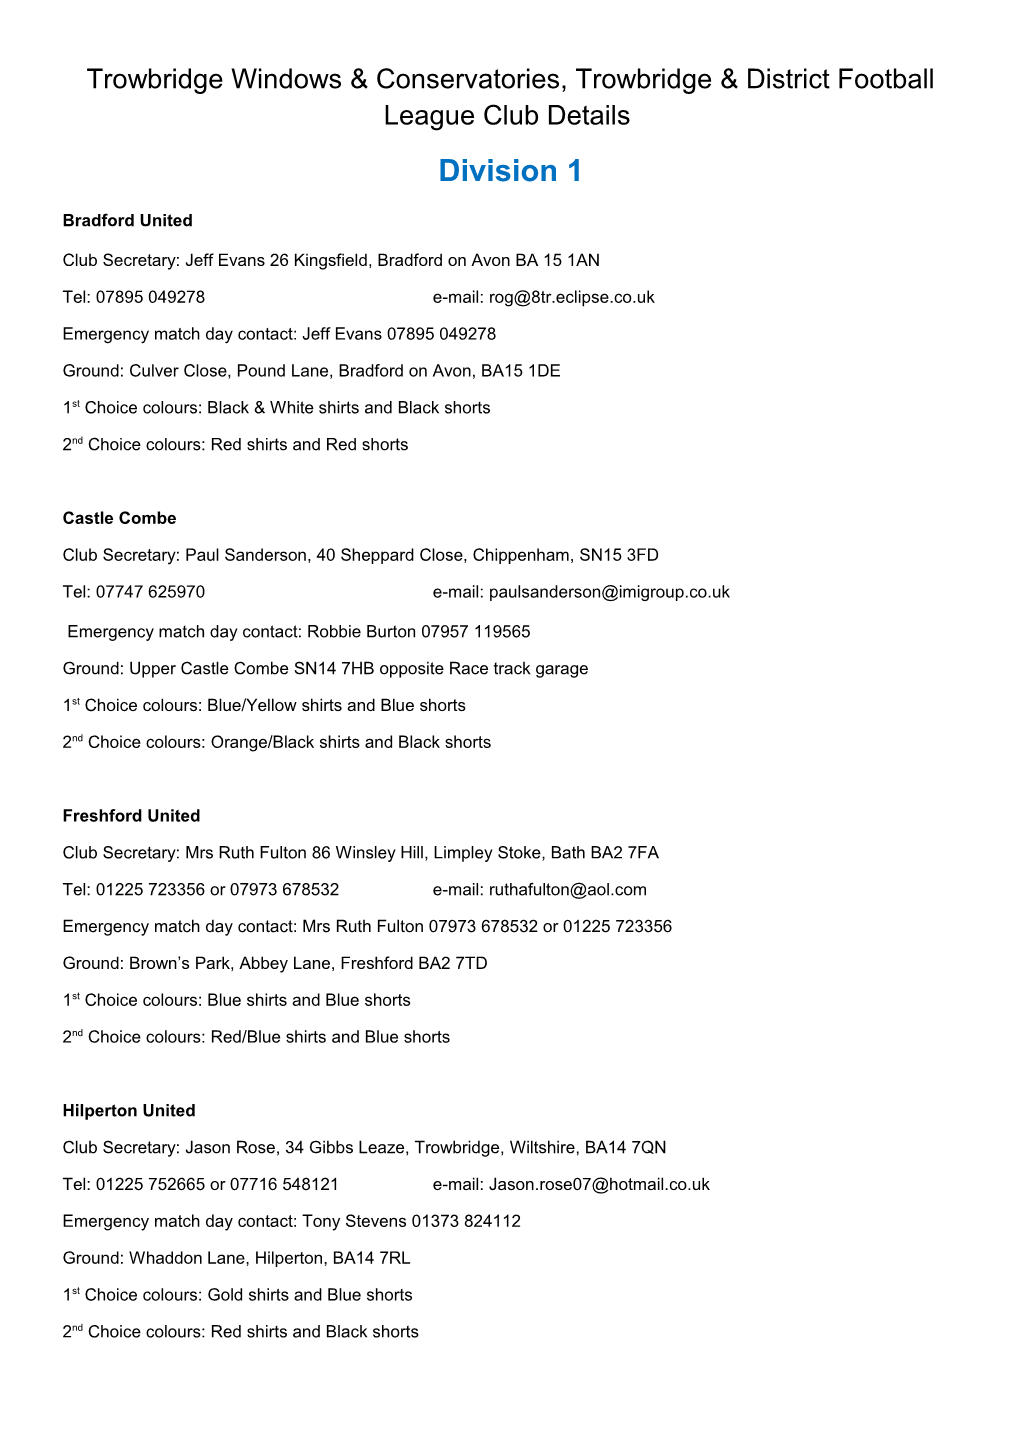 Trowbridge Windows & Conservatories, Trowbridge & District Football League Club Details